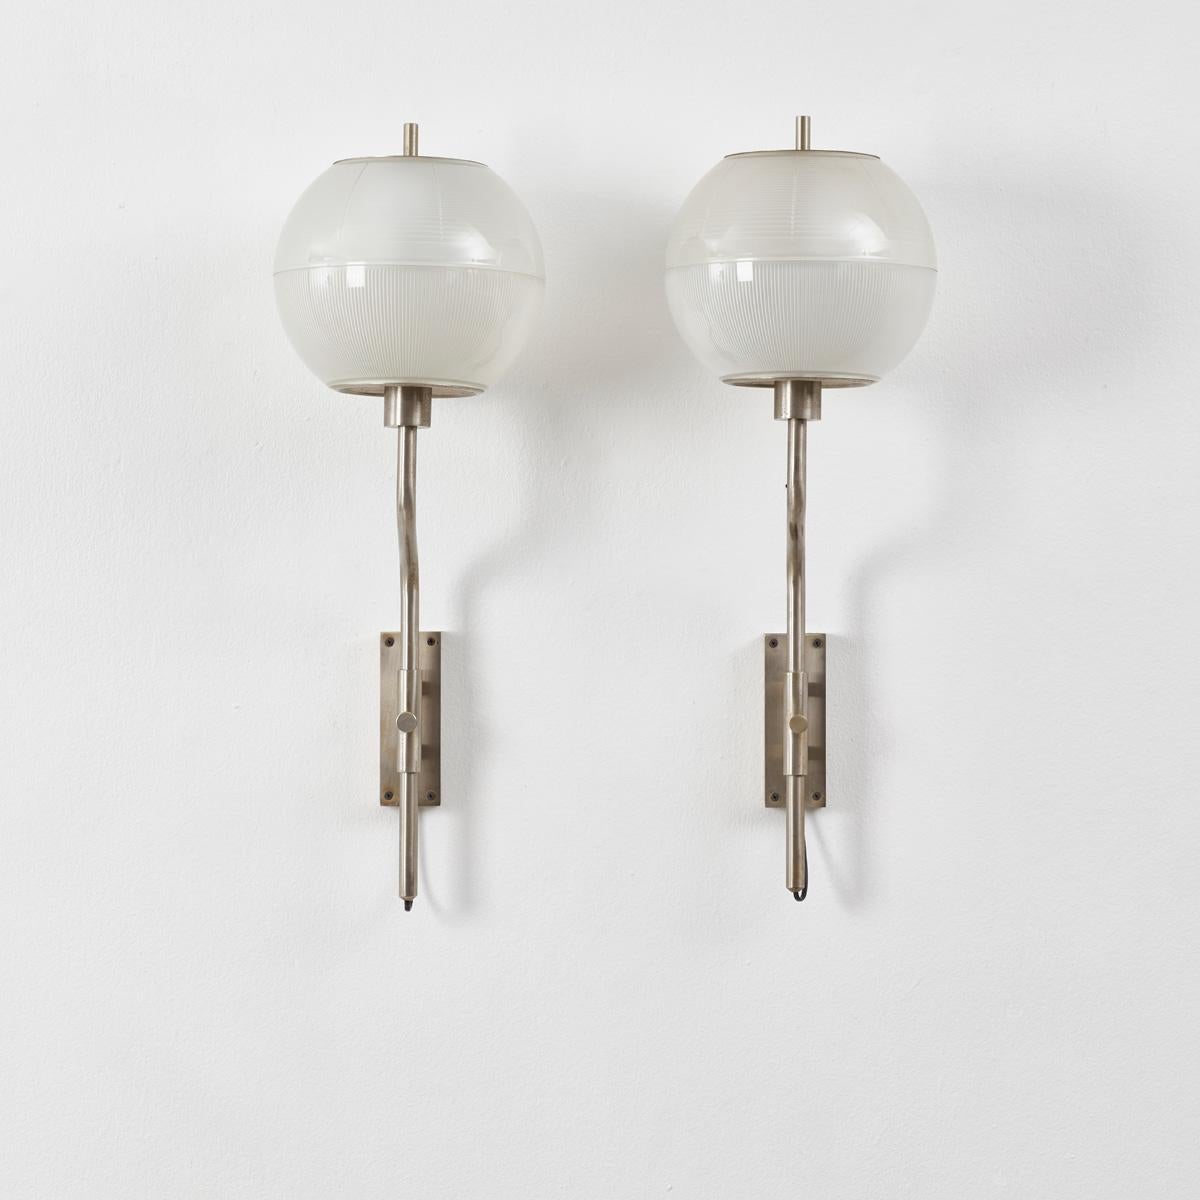 Ein Paar vernickelte Wandlampen mit Glaskugeln von Stilnovo, in der Art von Luigi Caccia Dominioni und Sergio Mazza. Sie werden mit einer Nickelhalterung an der Wand befestigt, in der sich eine geschickt platzierte Schraube befindet, mit der sich